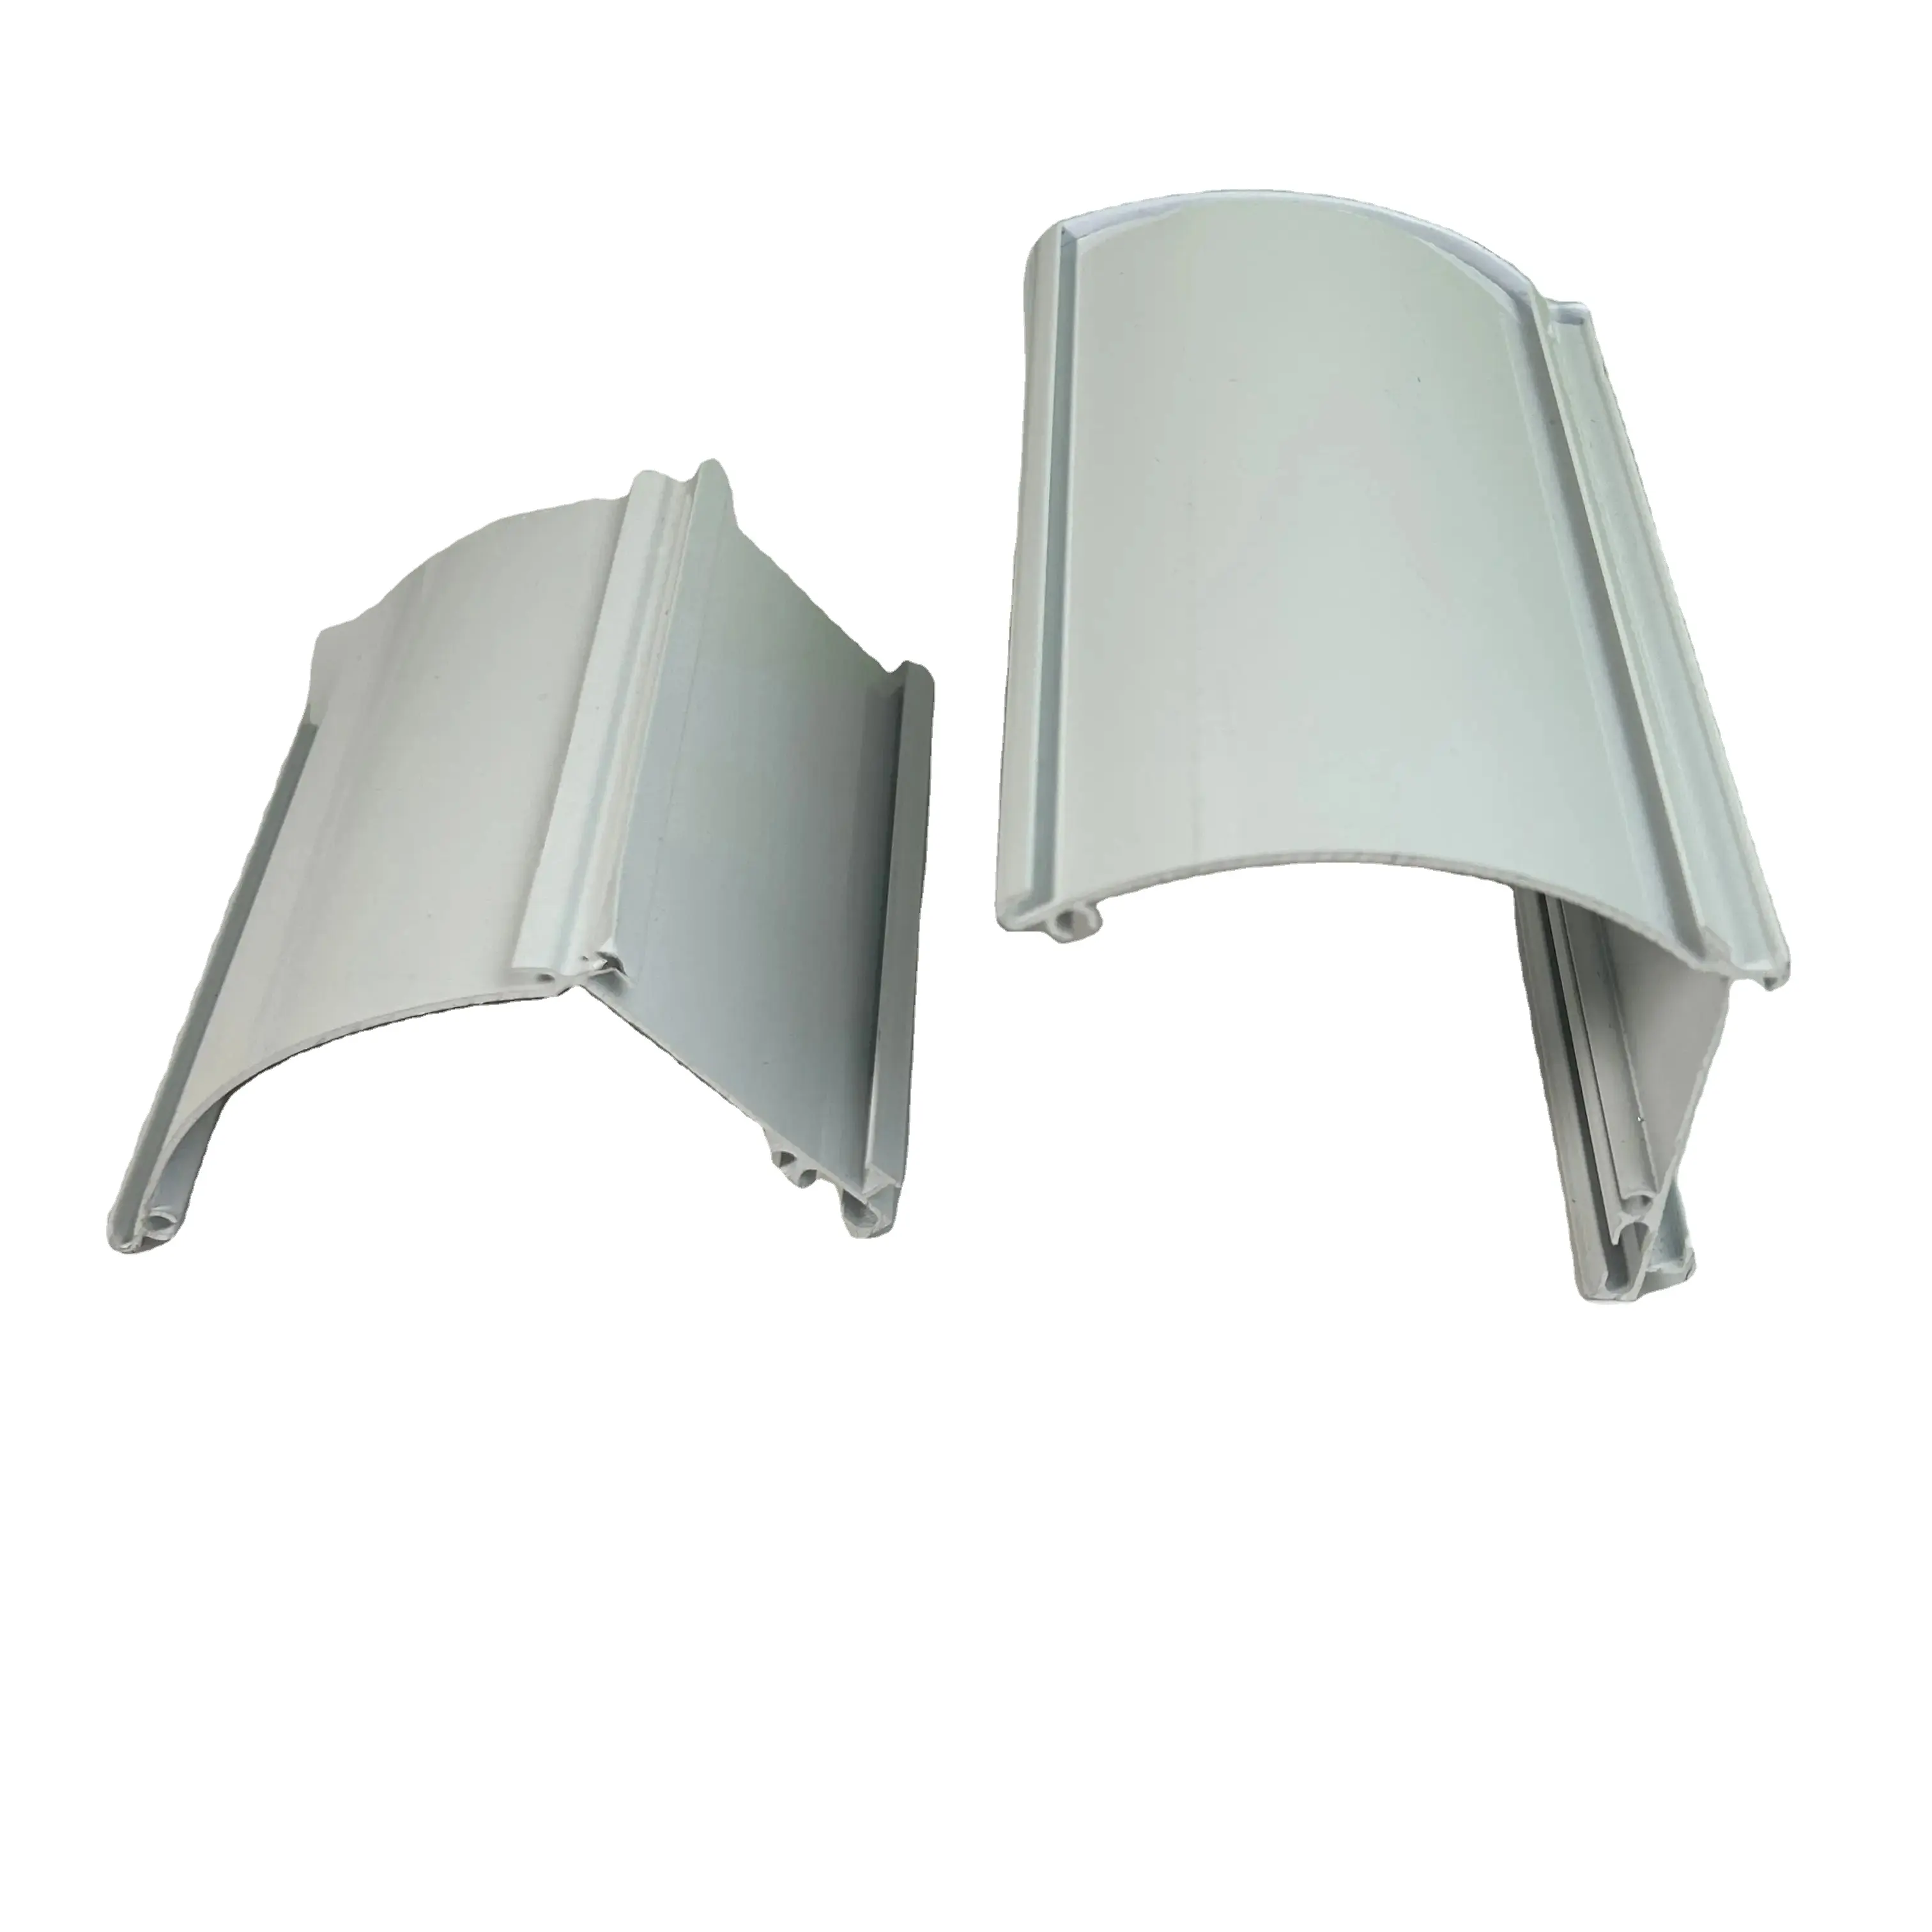 Accesorios para persianas de cebra cuadradas para persianas enrollables con casete superior y riel inferior